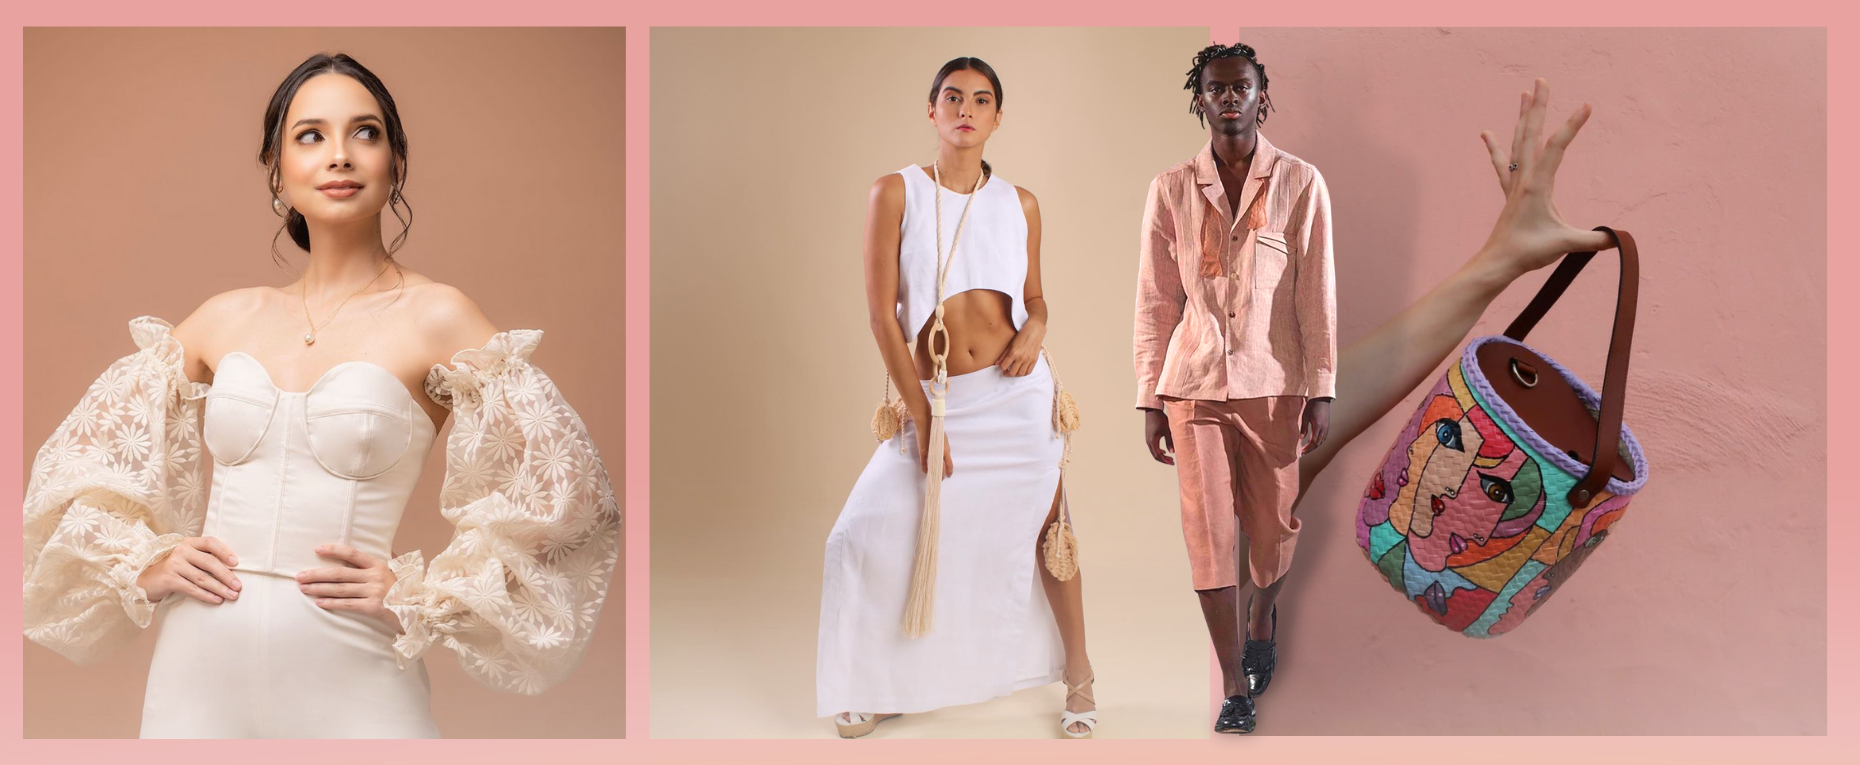 Propuestas dominicanas de moda